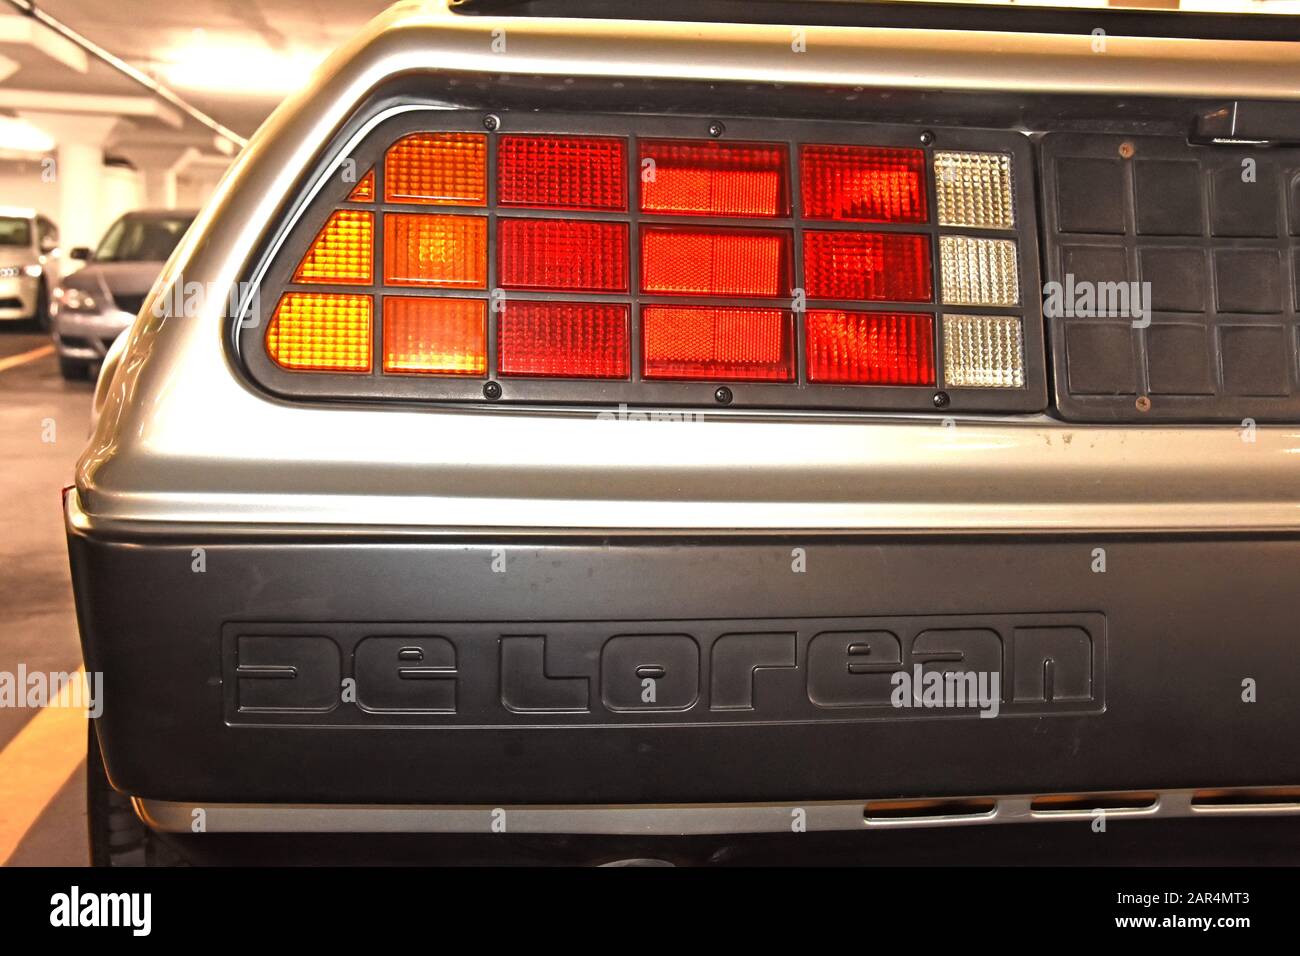 DeLorean DMC-12 Back to the Future Car Stock Photo